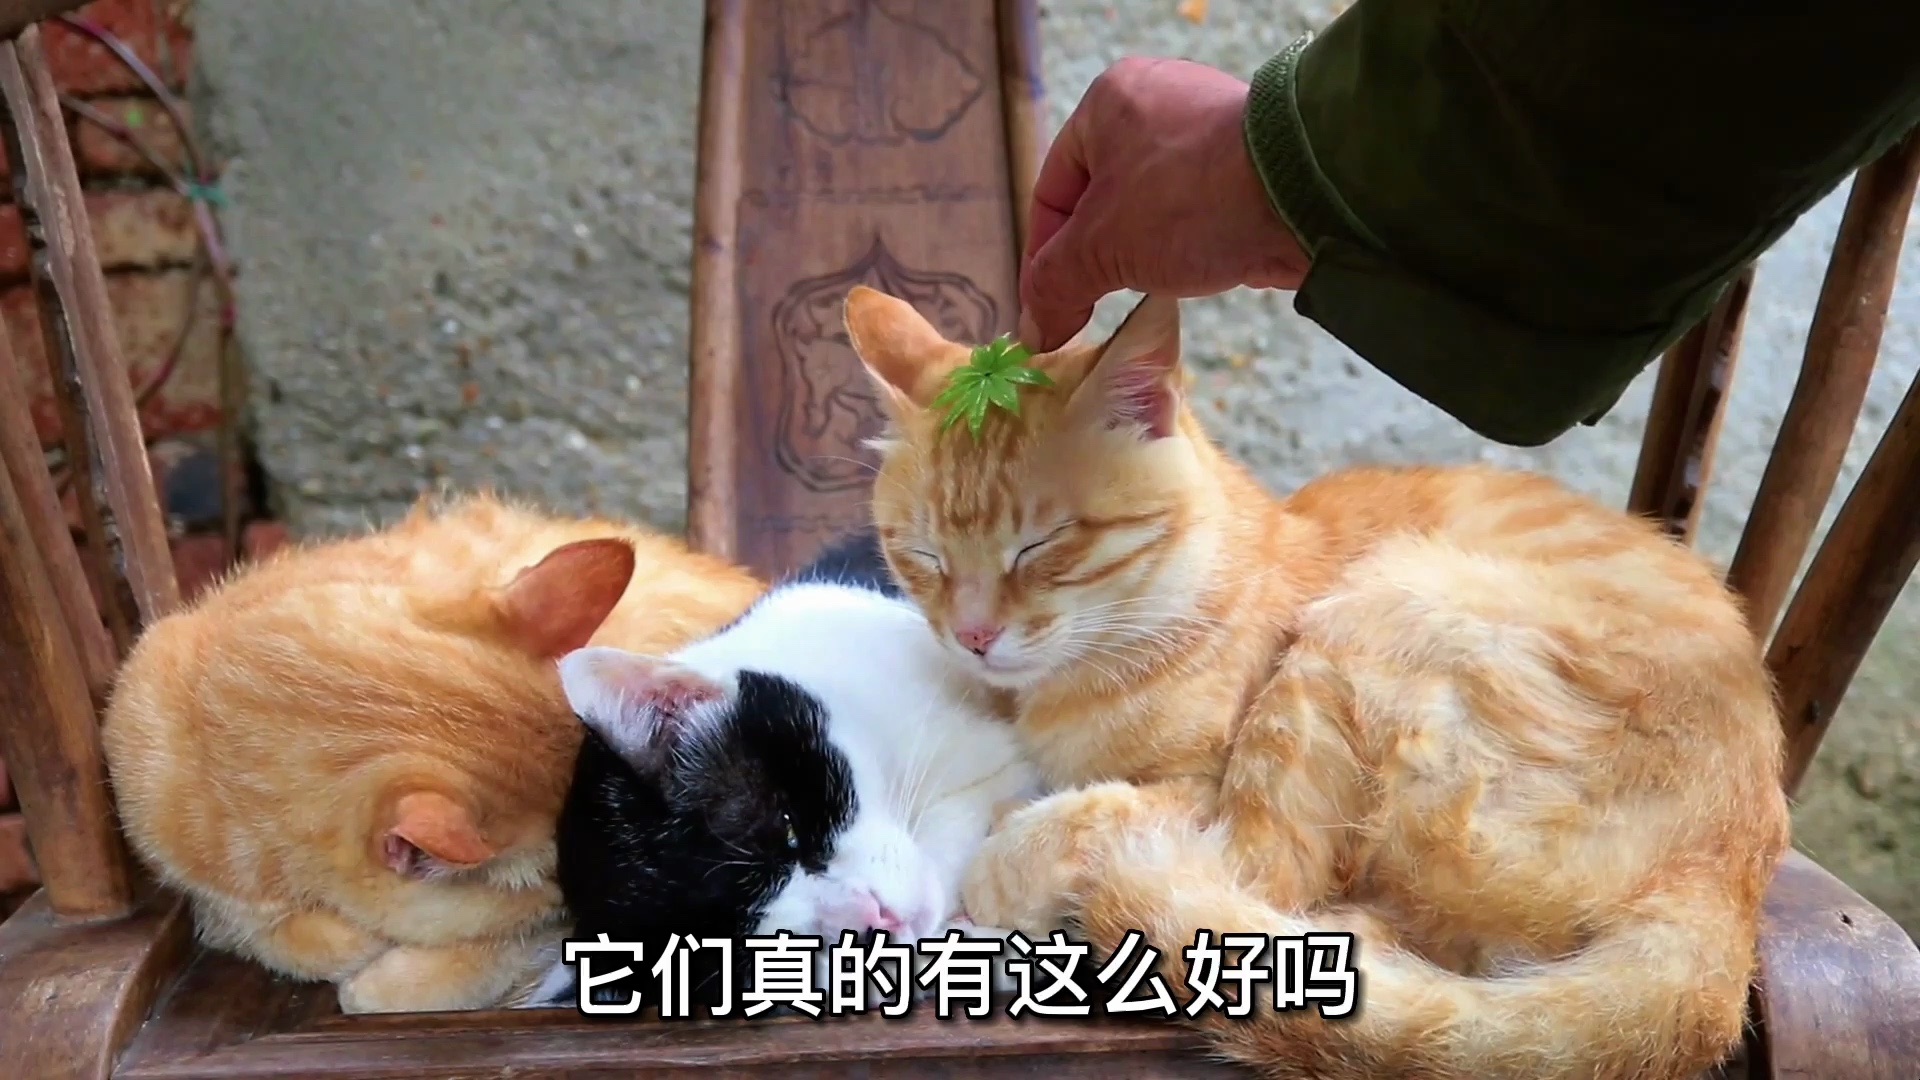 为什么全网都在说中华田园猫有多好有多优秀，它们真的有这么好吗？让我们来看看这些理由